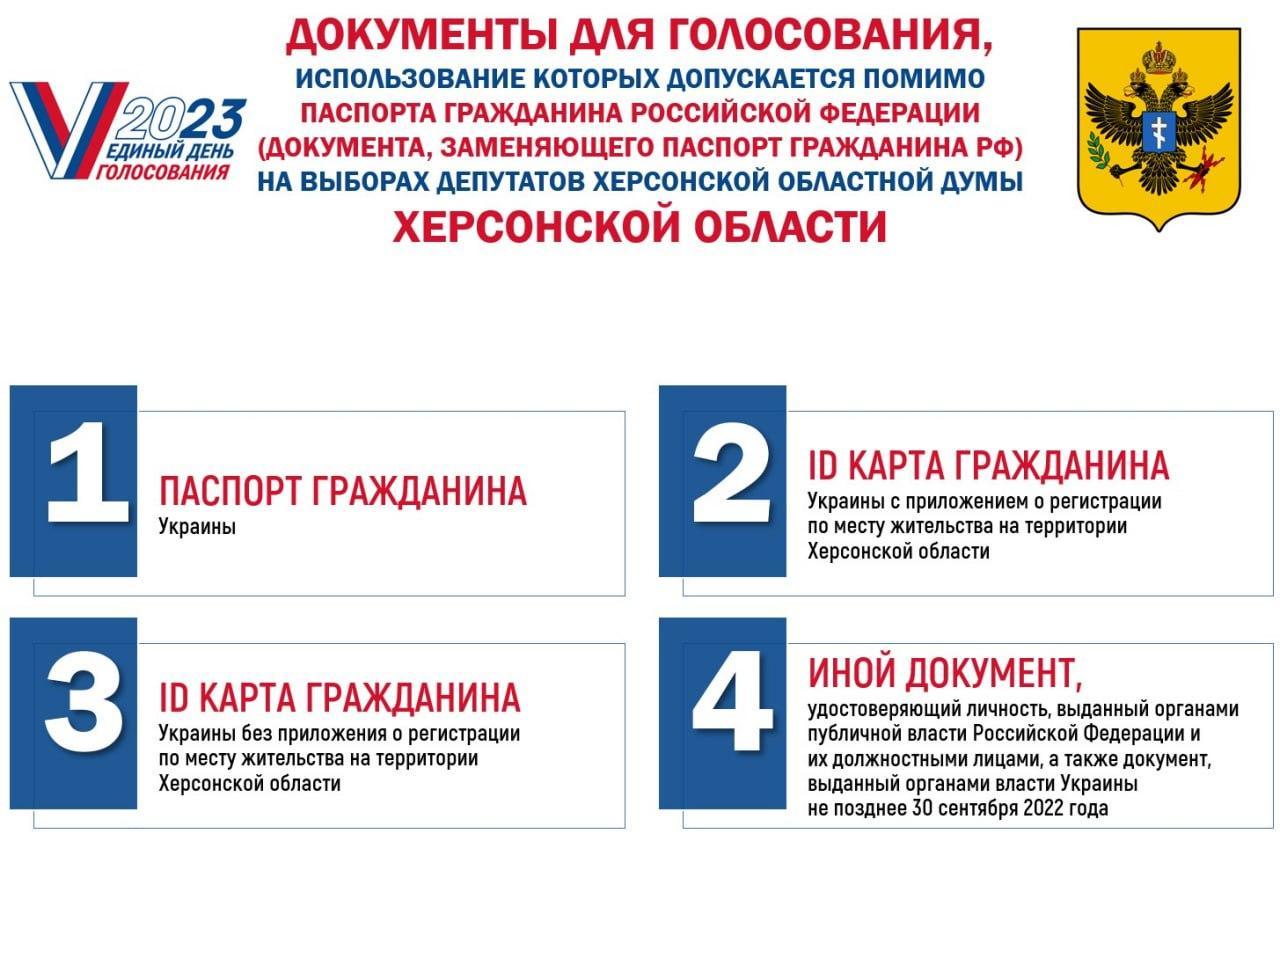 Жители новых регионов России смогут проголосовать на выборах депутатов органов законодательной власти  на территории Туапсинского района